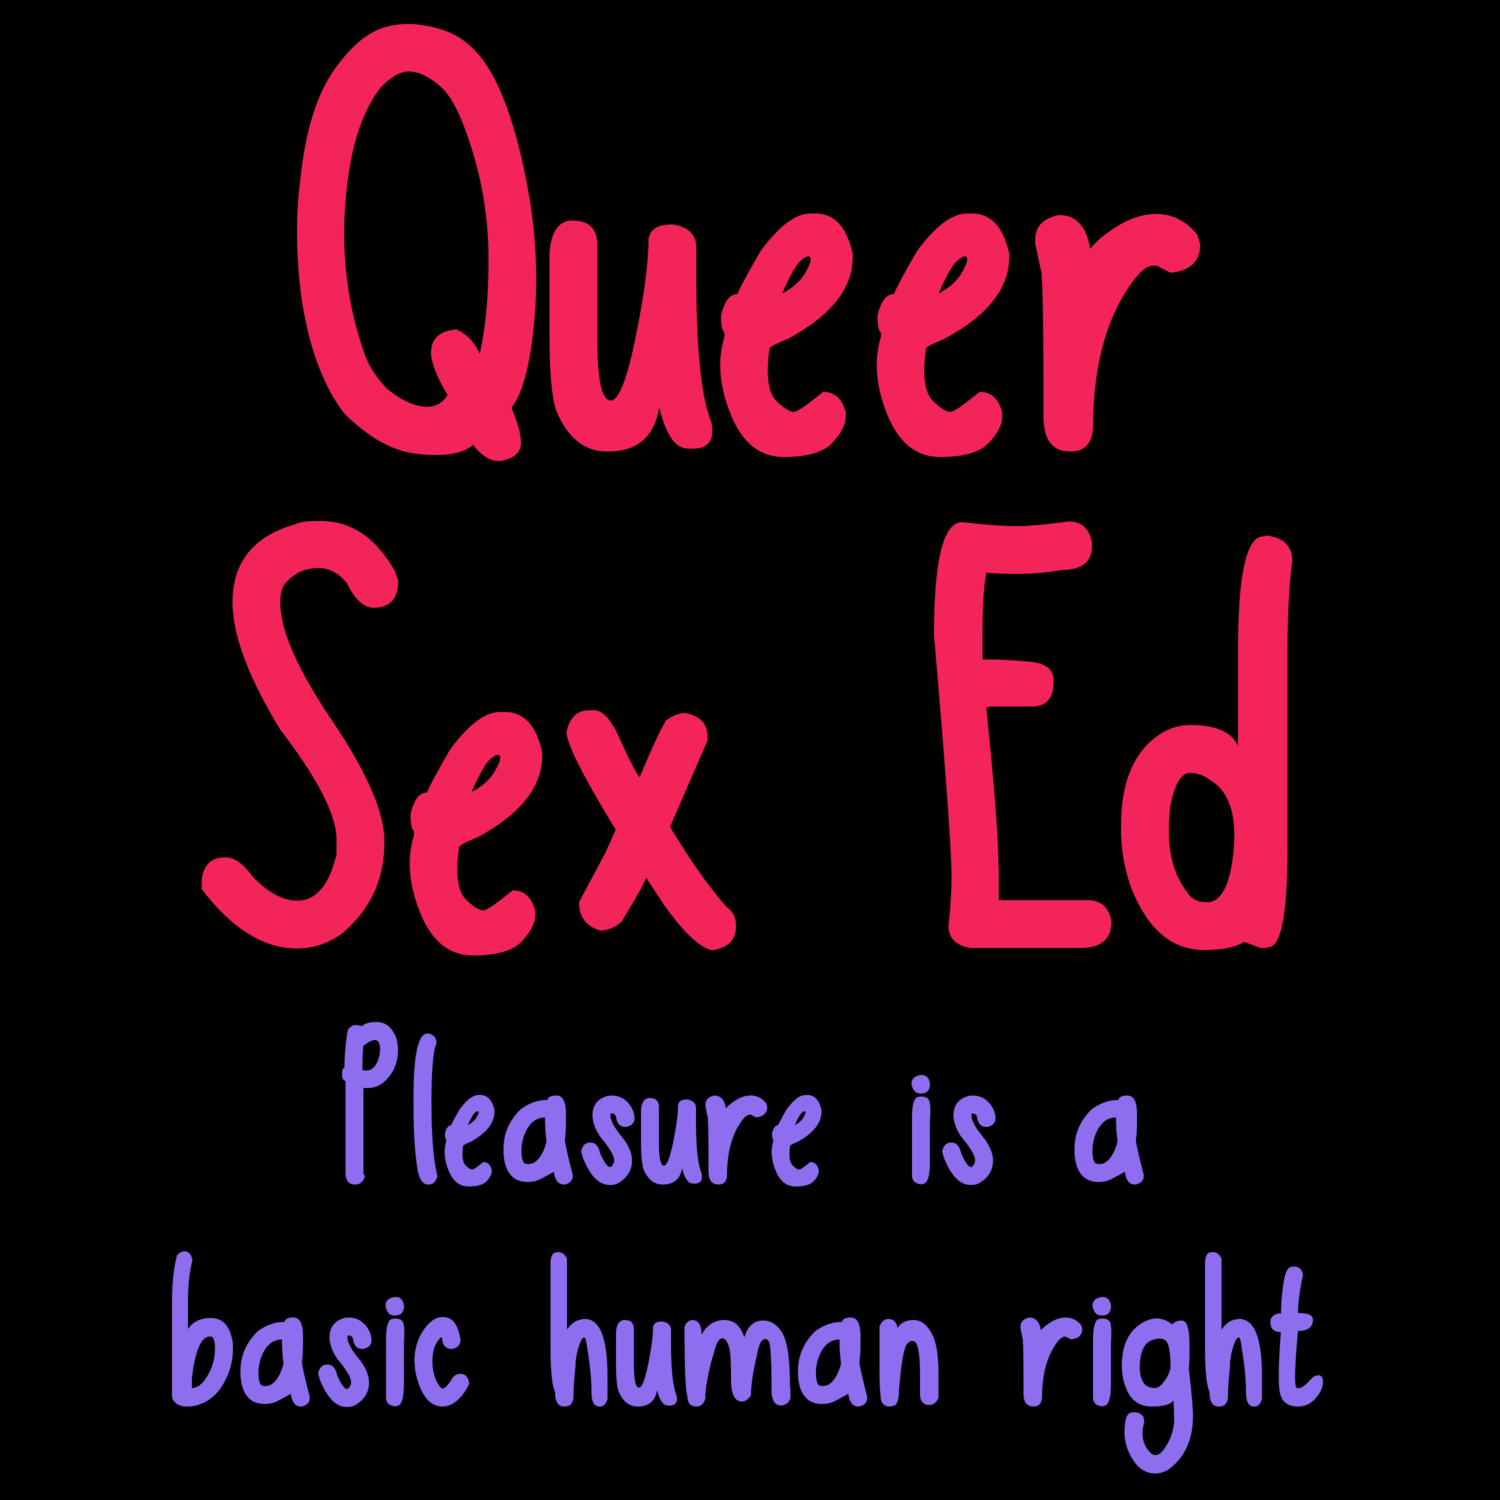 Queer Sex Ed